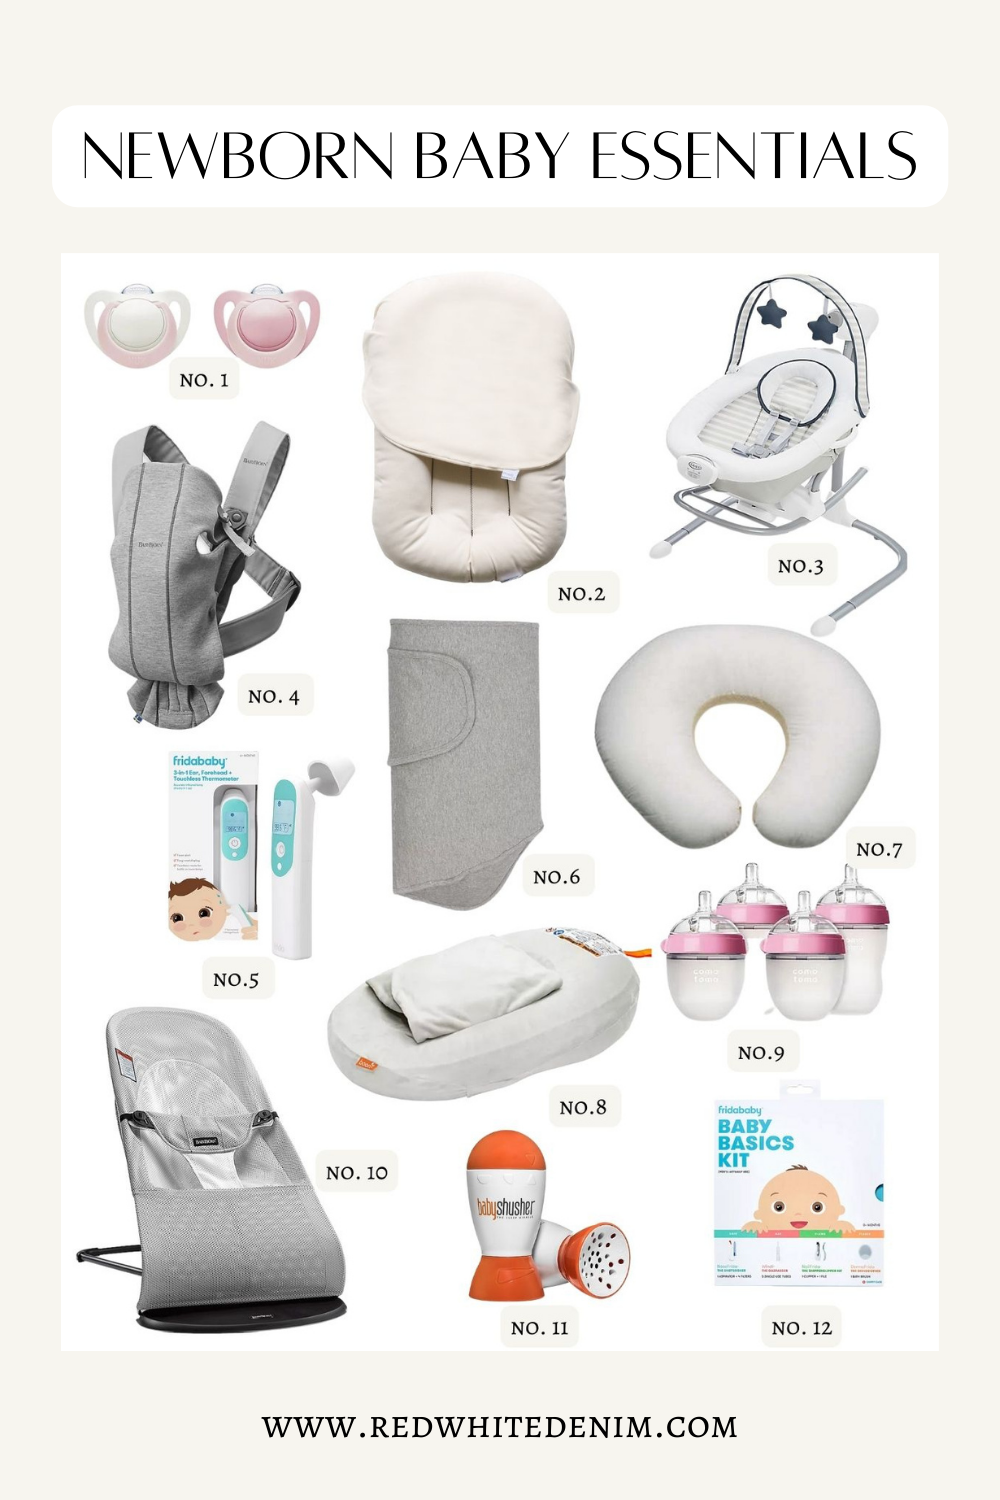 Fridababy - Baby Basics Kit